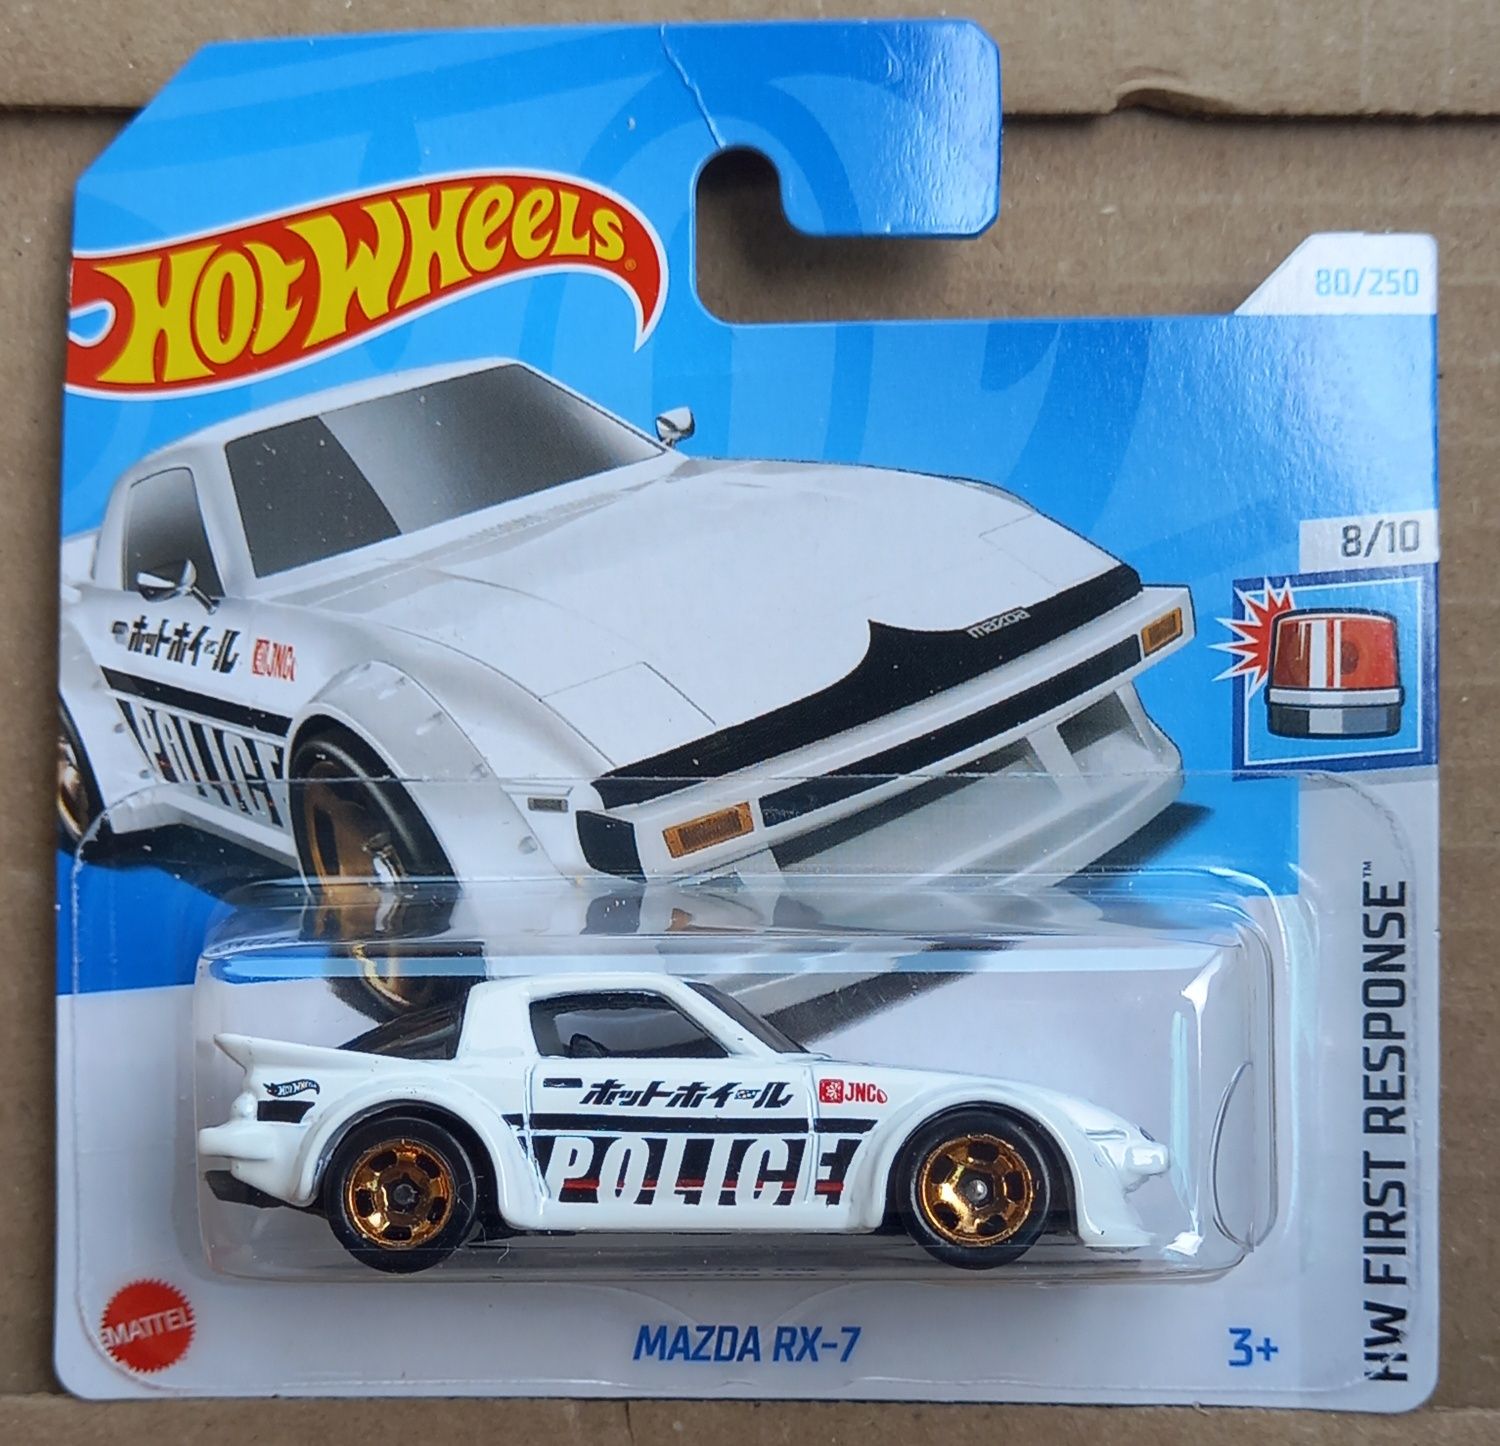 Mazda rx-7 (police)